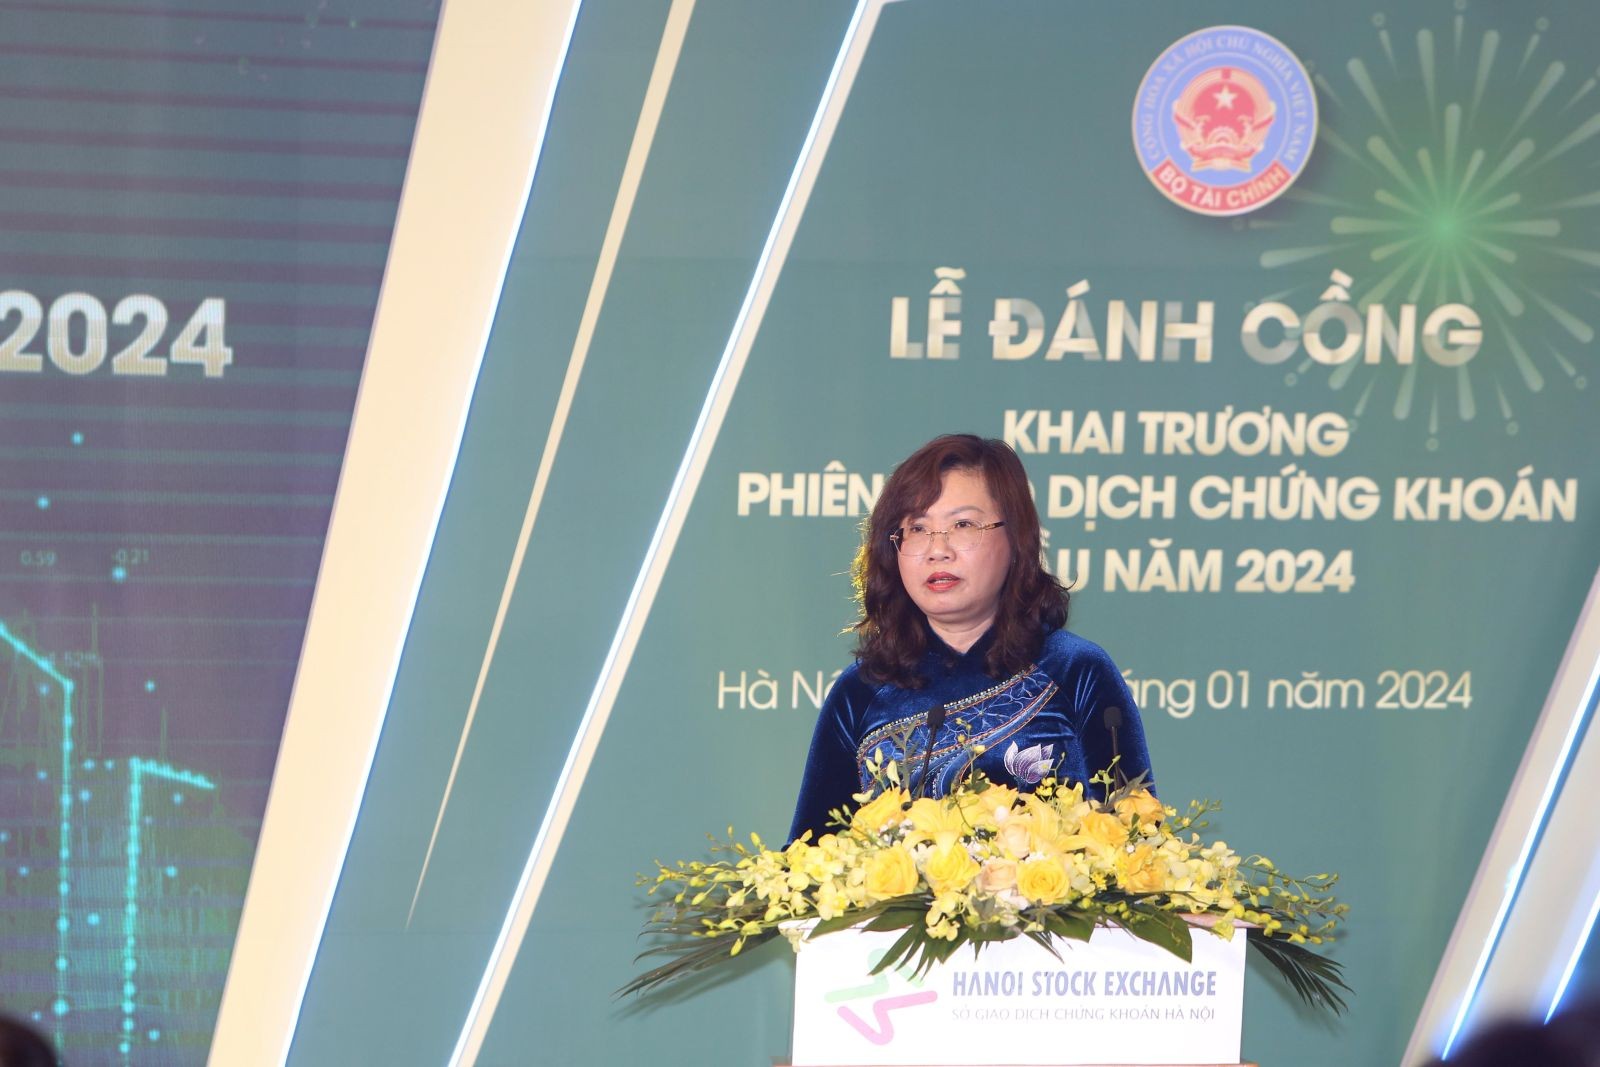 Thứ trưởng Bộ Tài chính Nguyễn Đức Chi đánh cồng khai trương phiên giao dịch chứng khoán đầu năm 2024 tại Sở GDCK Hà Nội - Ảnh 3.